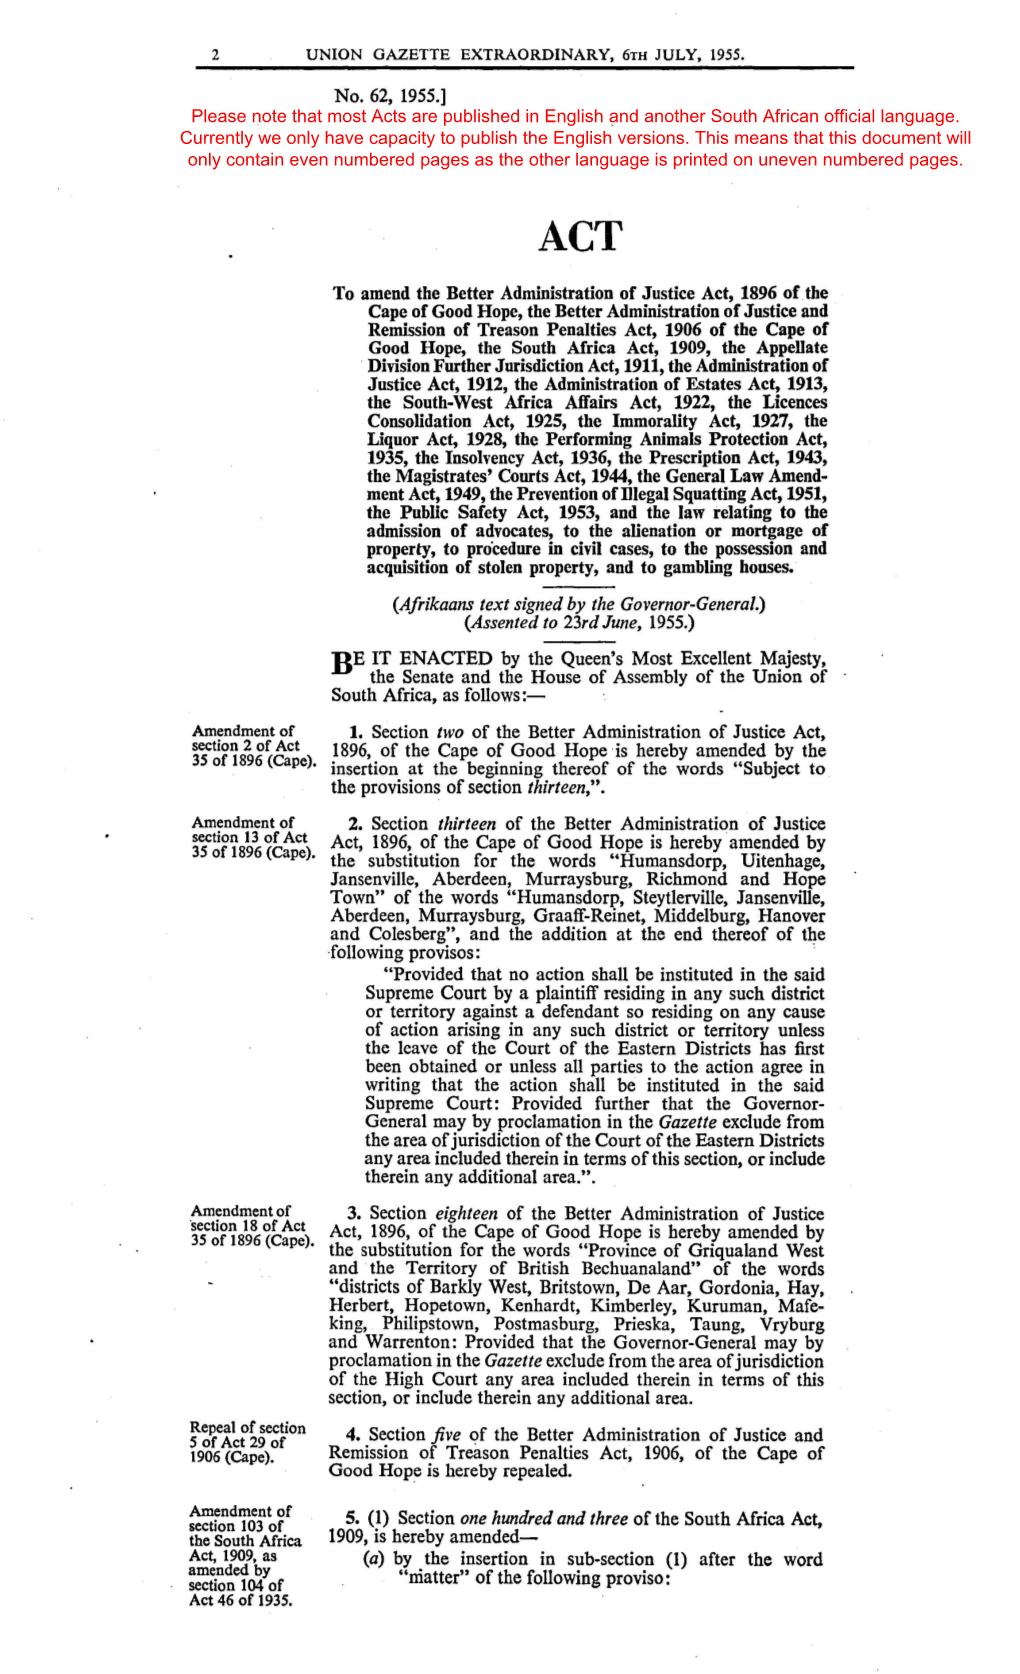 General Law Amendment Act 62 of 1955